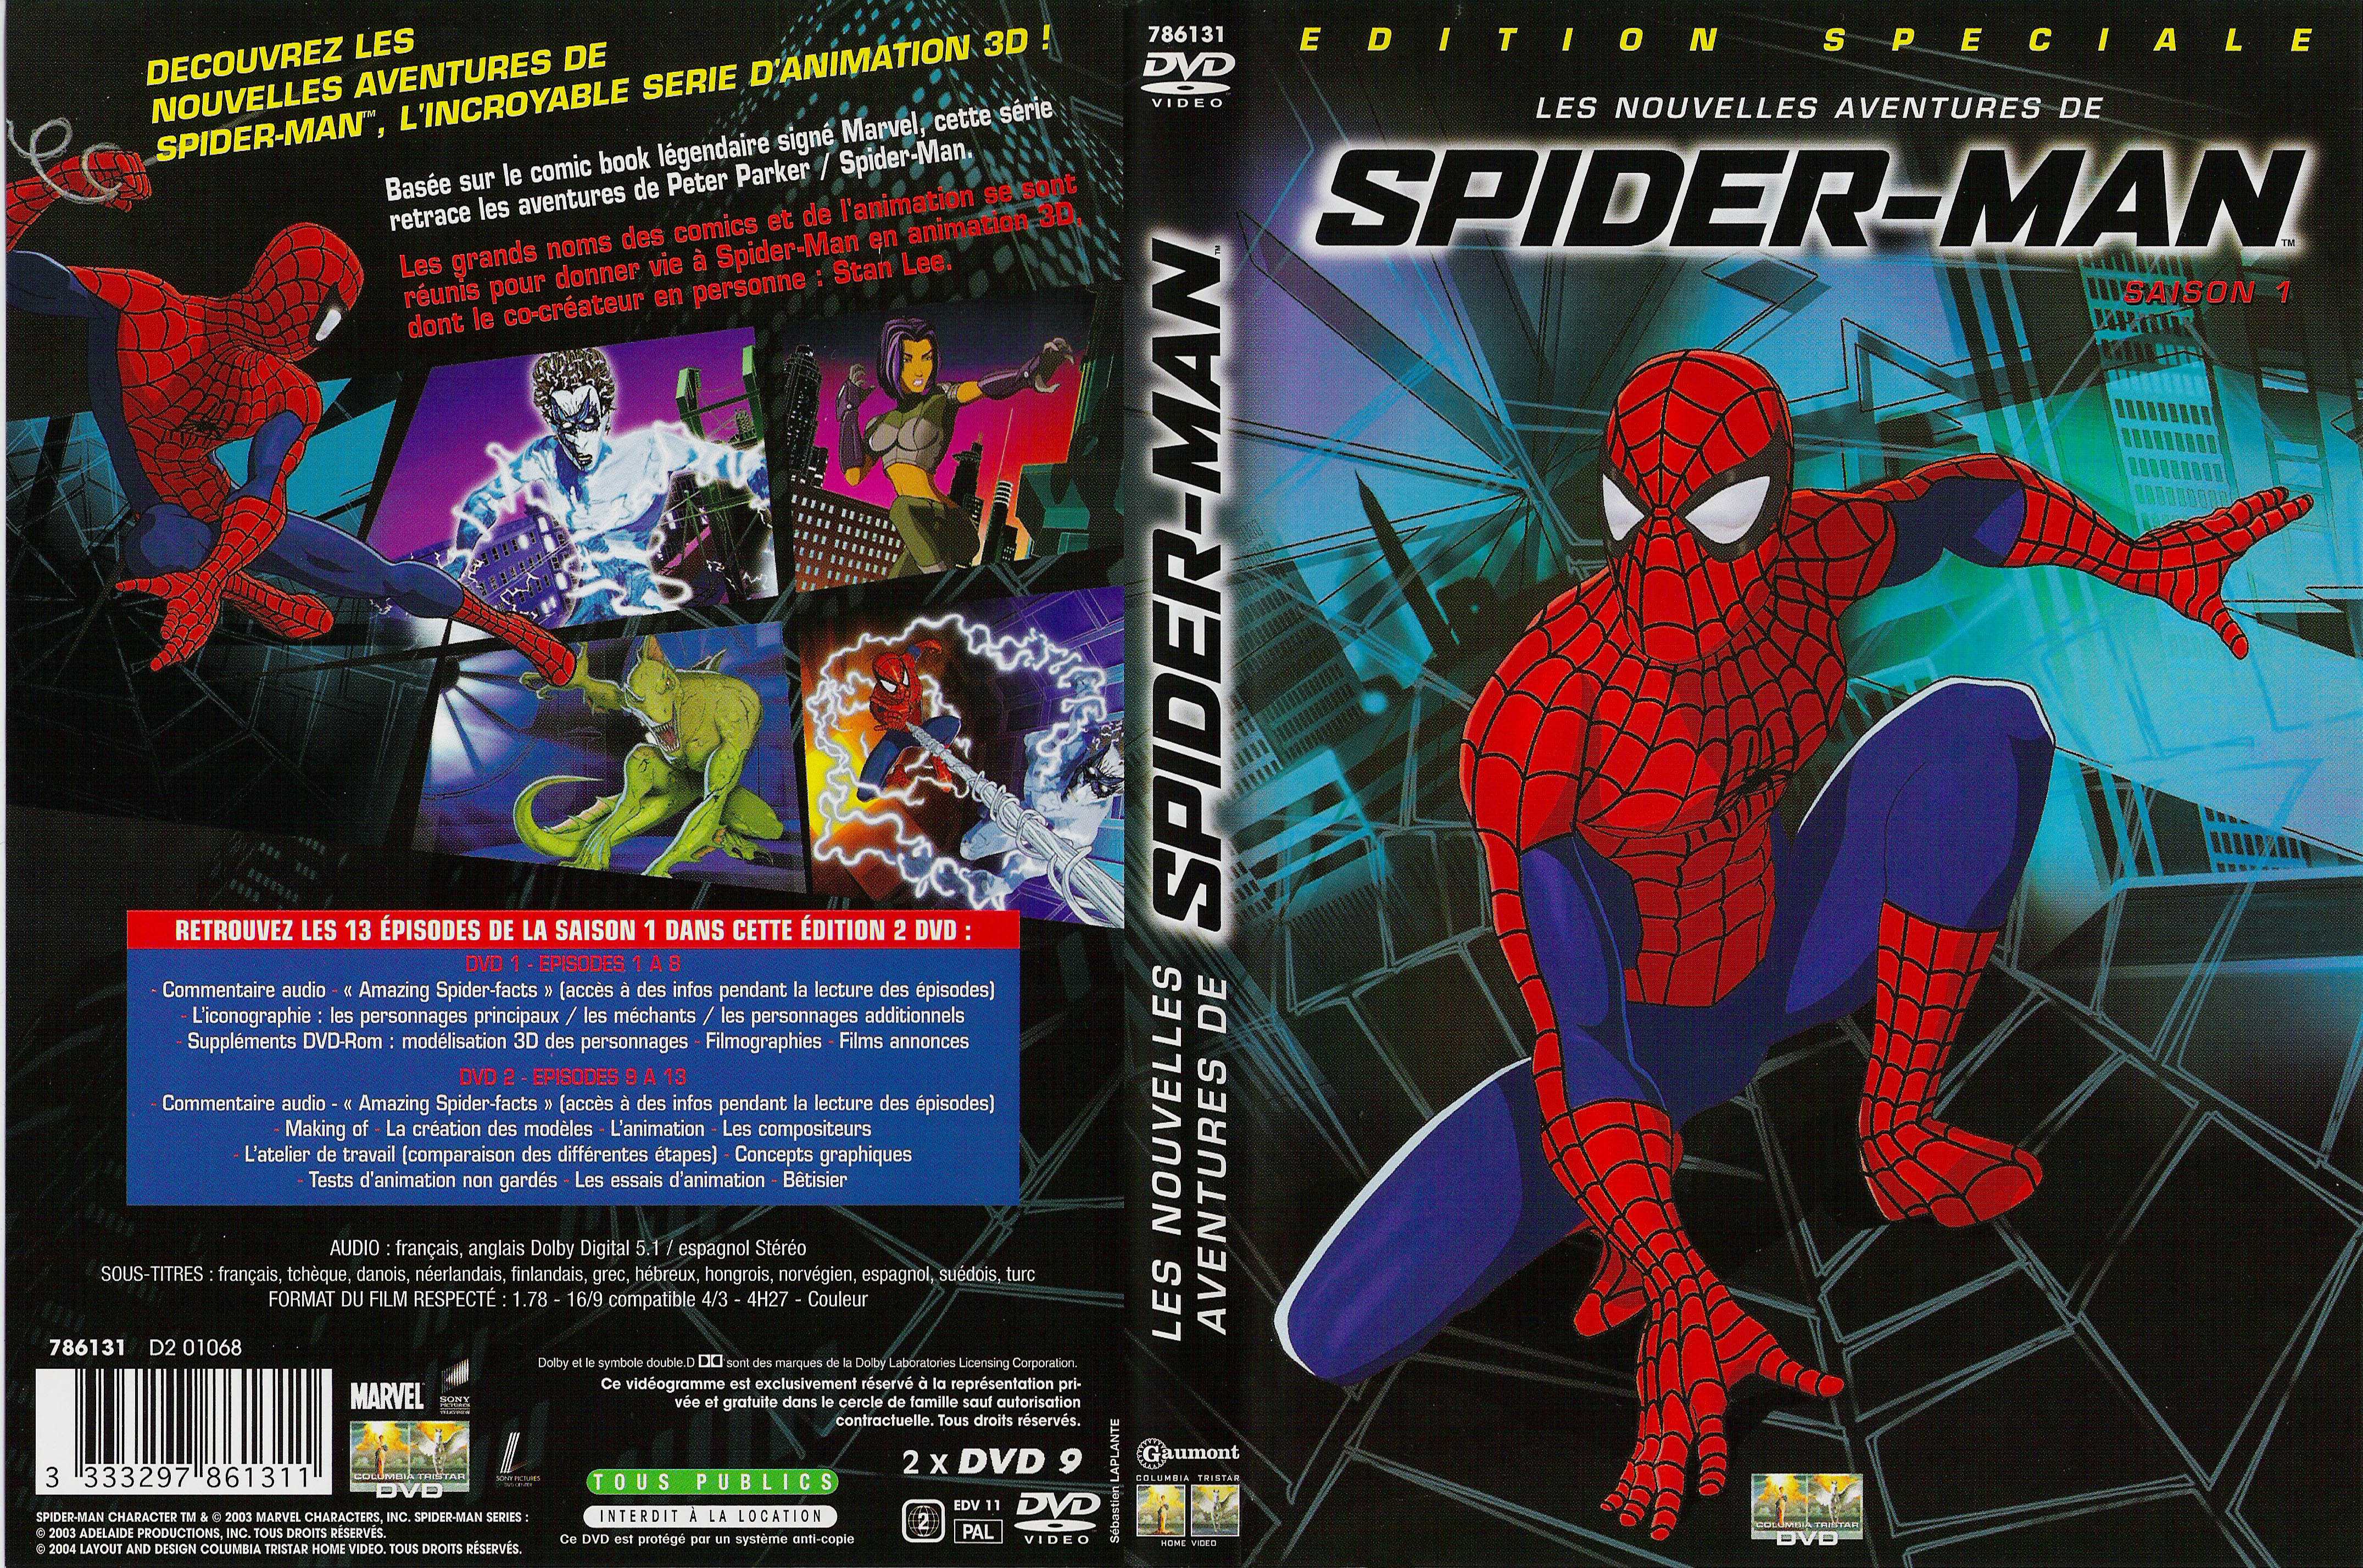 Jaquette DVD Les nouvelles aventures de spiderman saison 1